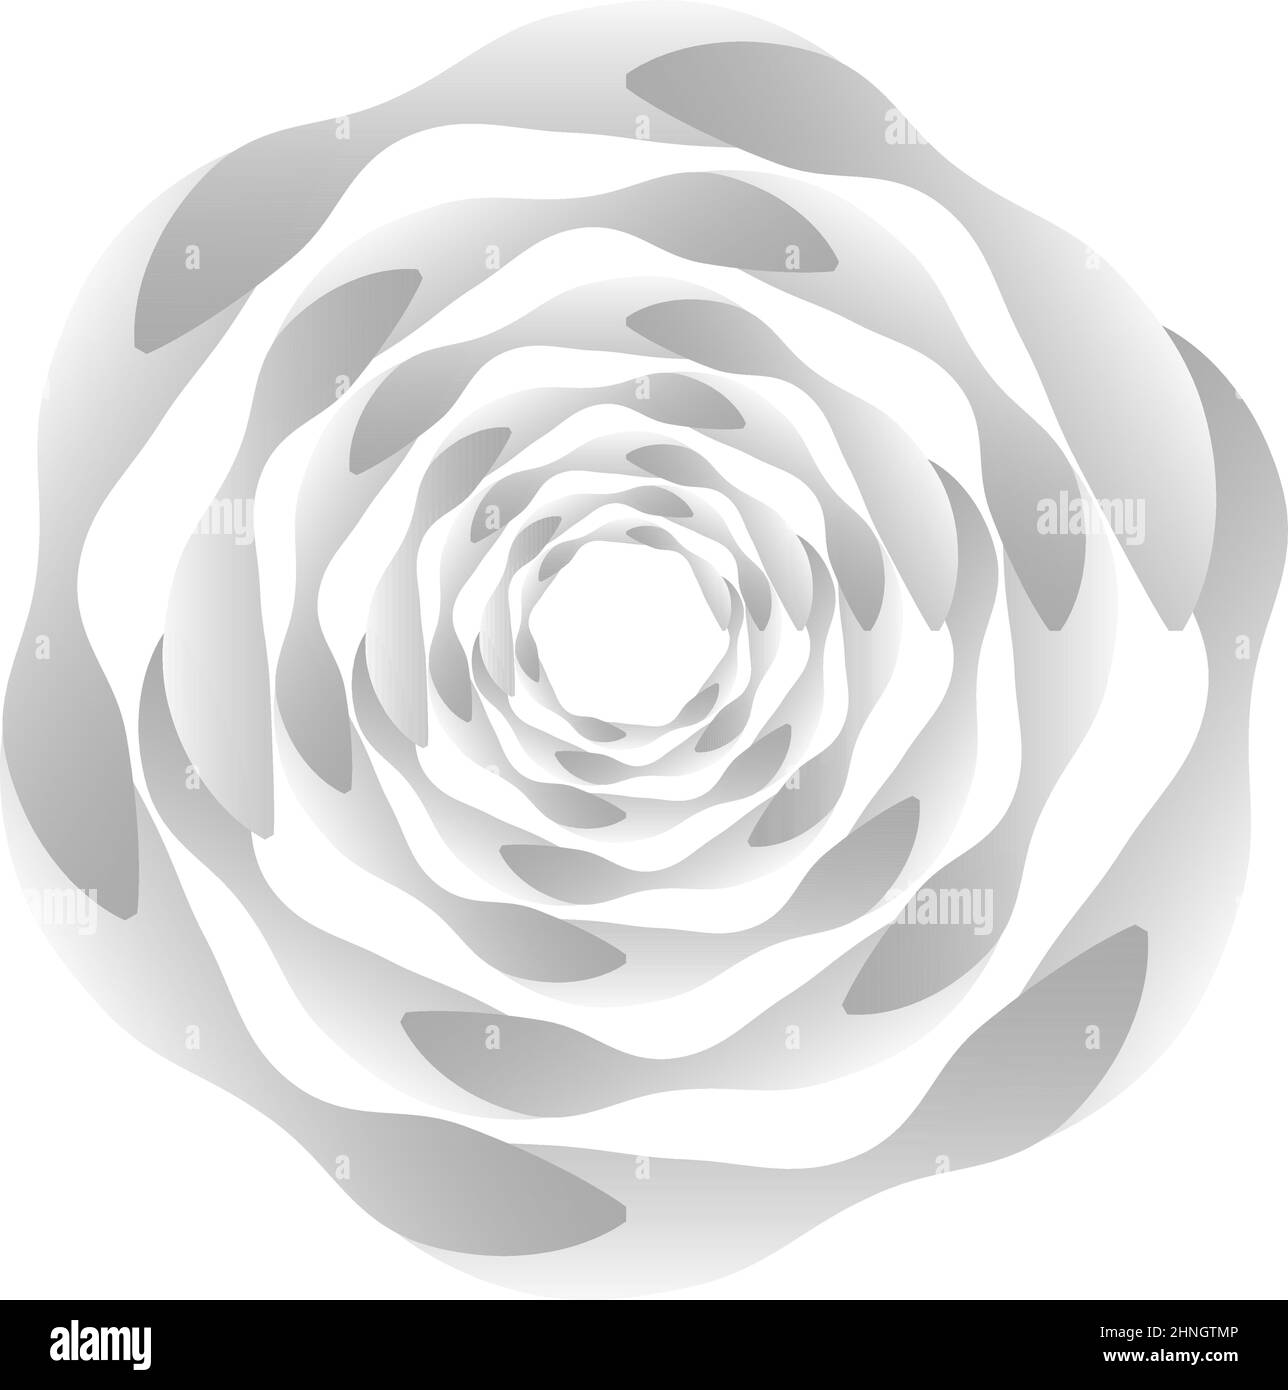 Cercle géométrique abstrait, élément de conception d'anneau. Cercle circulaire concentrique. Tourbillon, tourbillon, forme de spirale et de vortex, icône, symbole - vecteur de stock illus Illustration de Vecteur